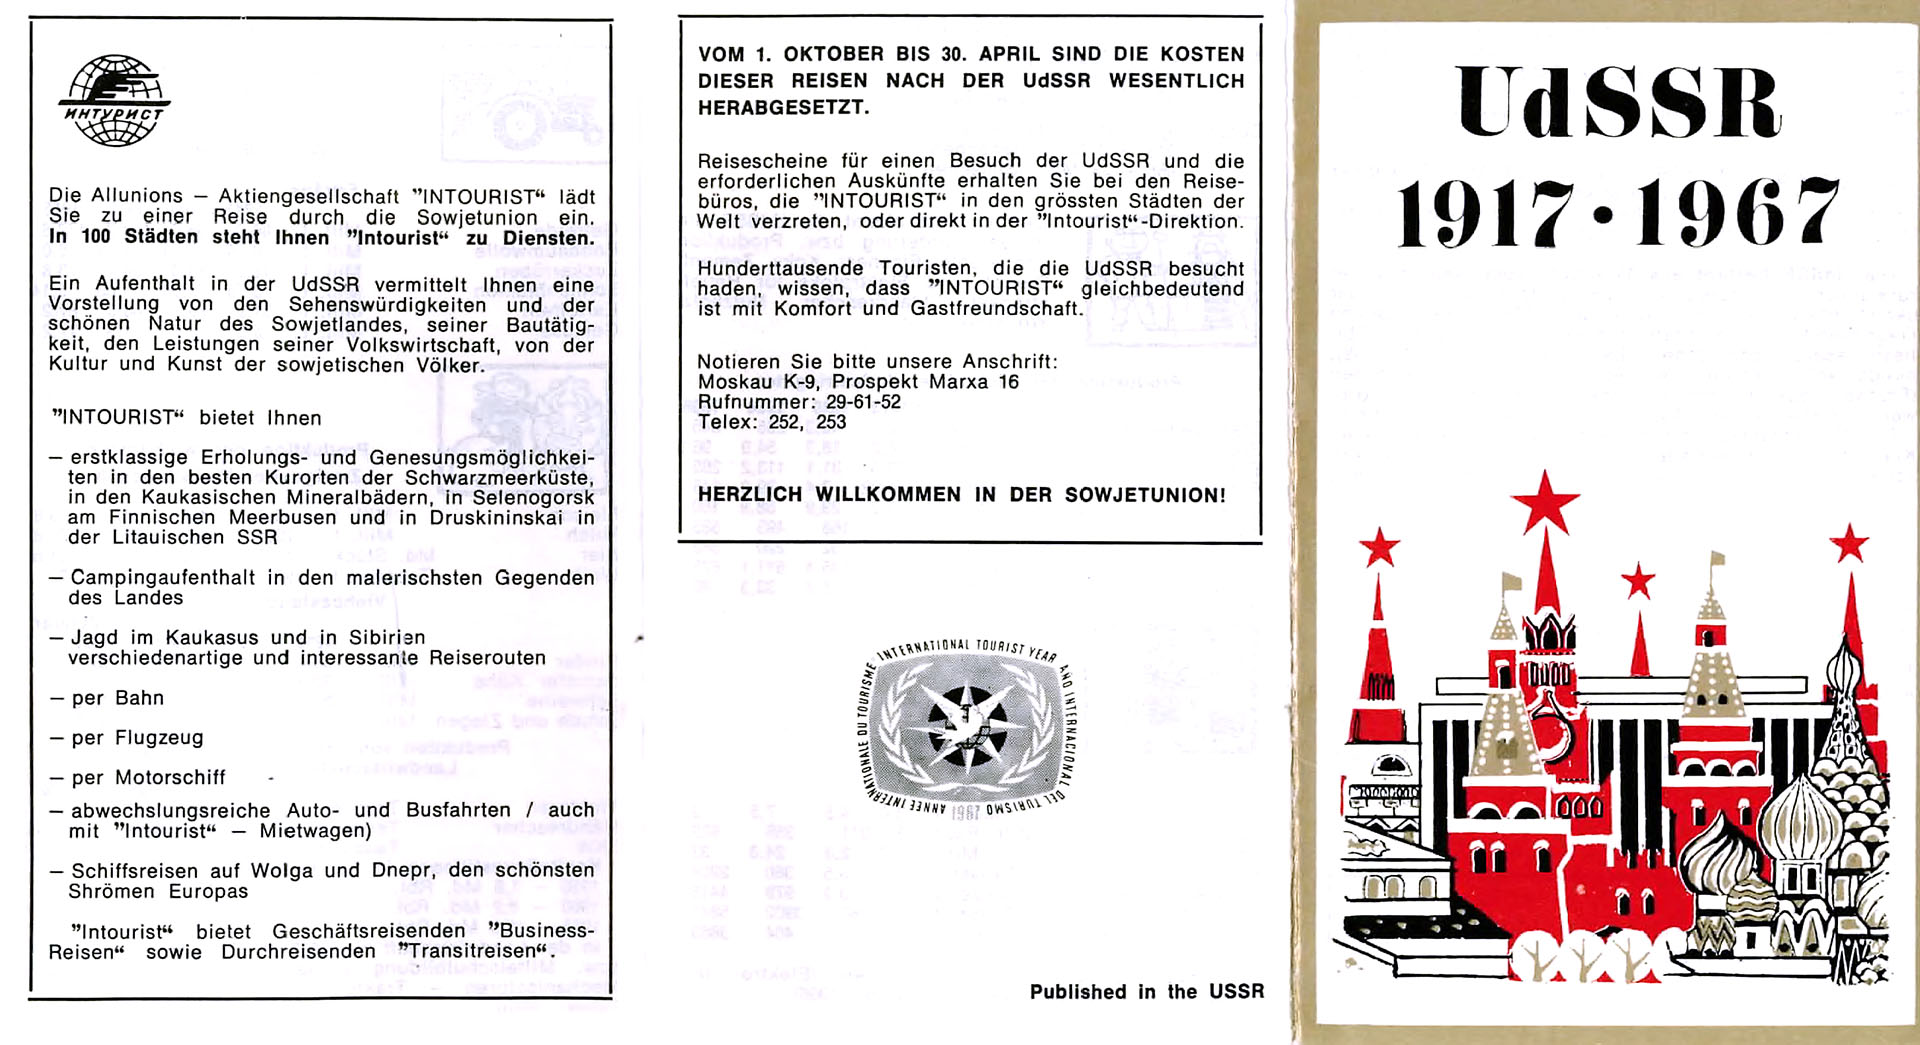 UdSSR 1917 - 1967 - Verwaltung für Fremdenverkehr beim Ministerrat der UdSSR